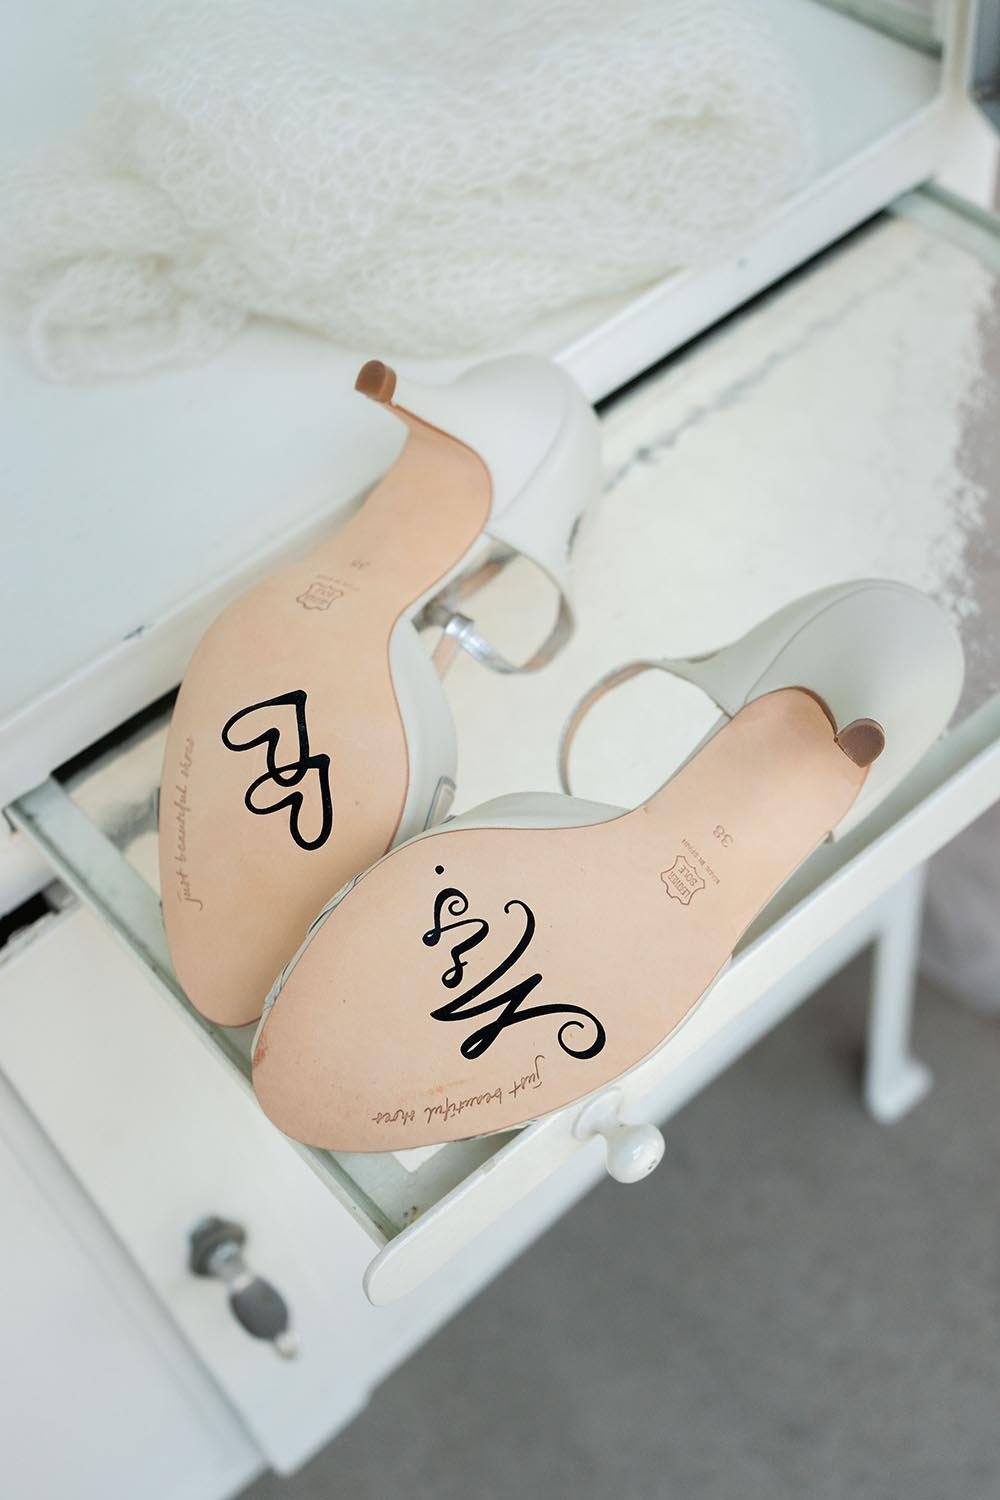 Schuhsticker für lesbisches Brautpaar zur Hochzeit - "Mrs & Mrs"